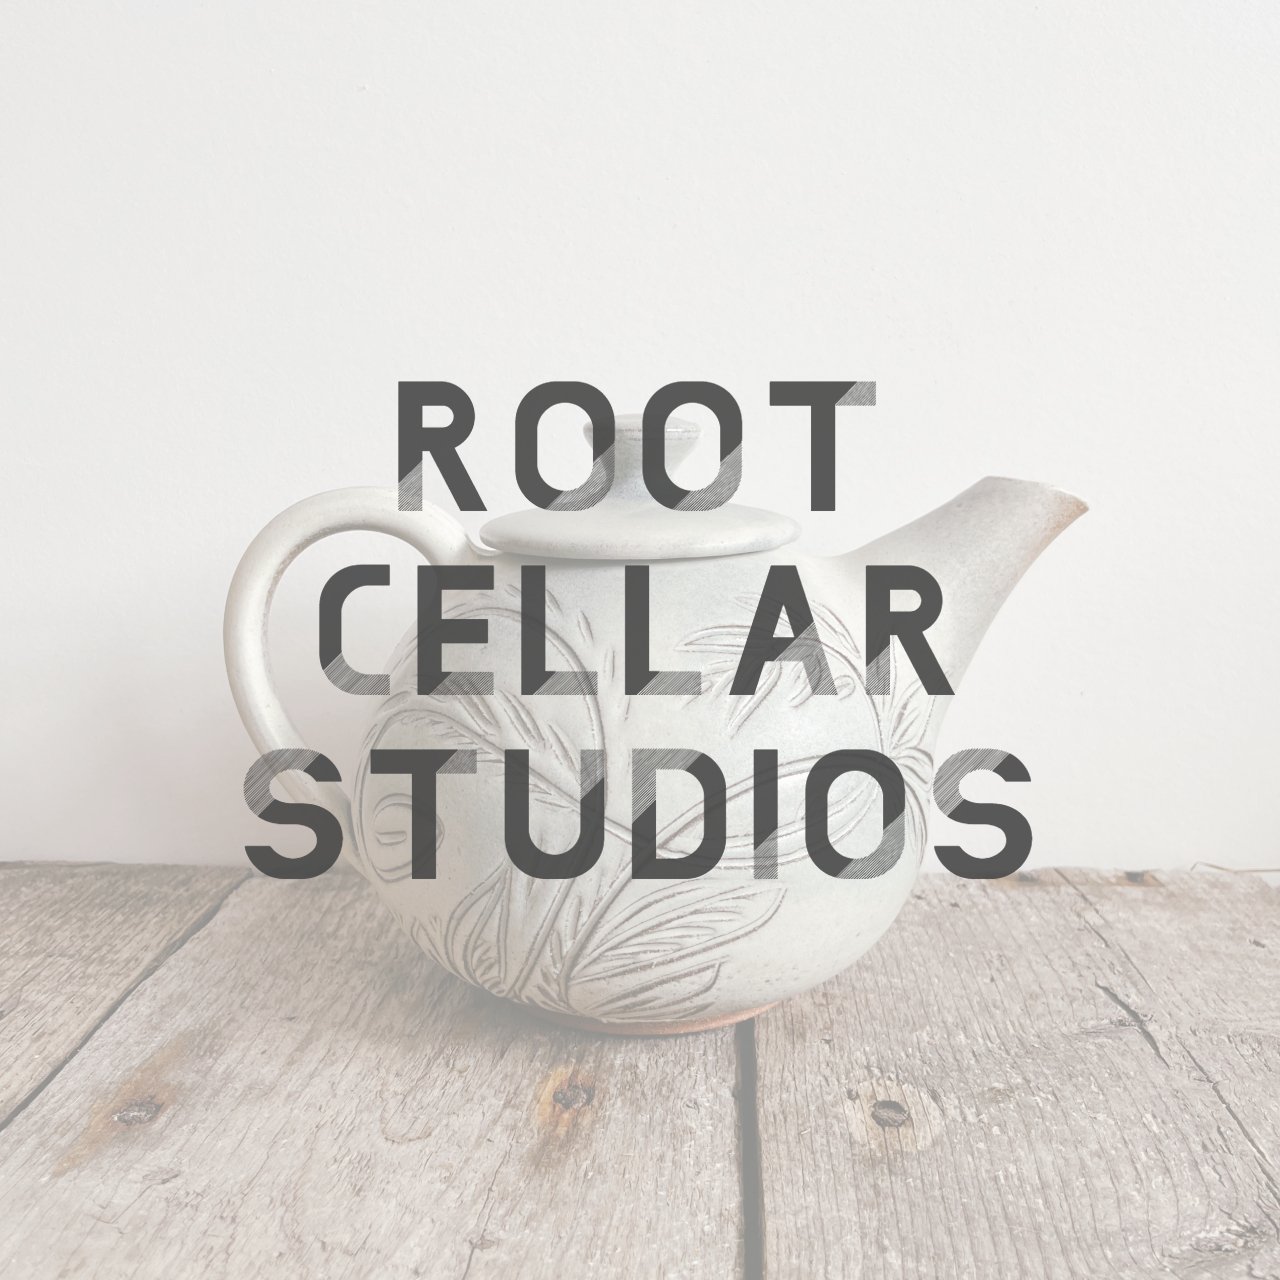 Root Cellar Studios(1).jpg